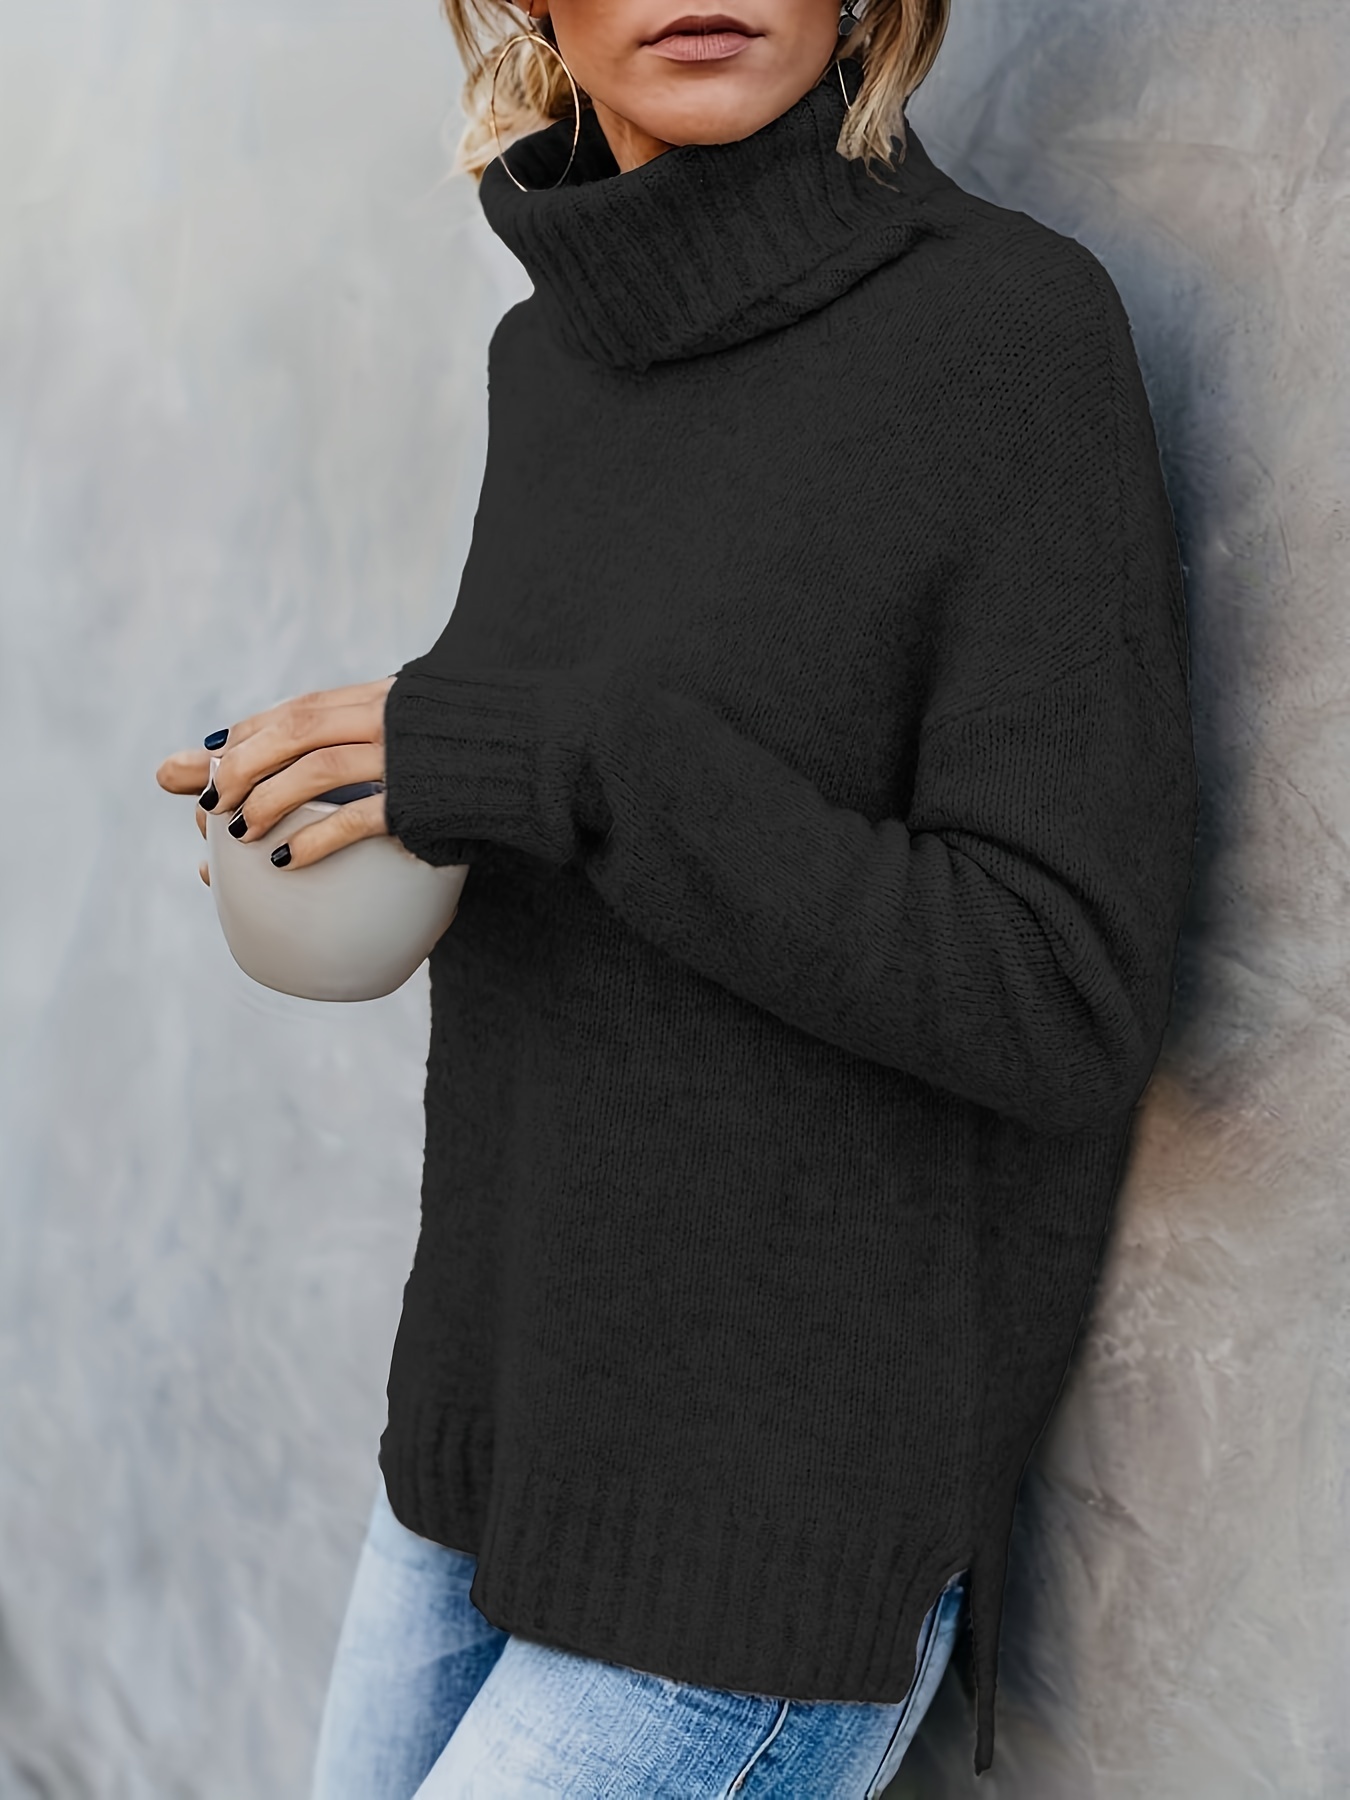 Mujer Cuello Alto Suéter de Punto Jersey de Invierno Top